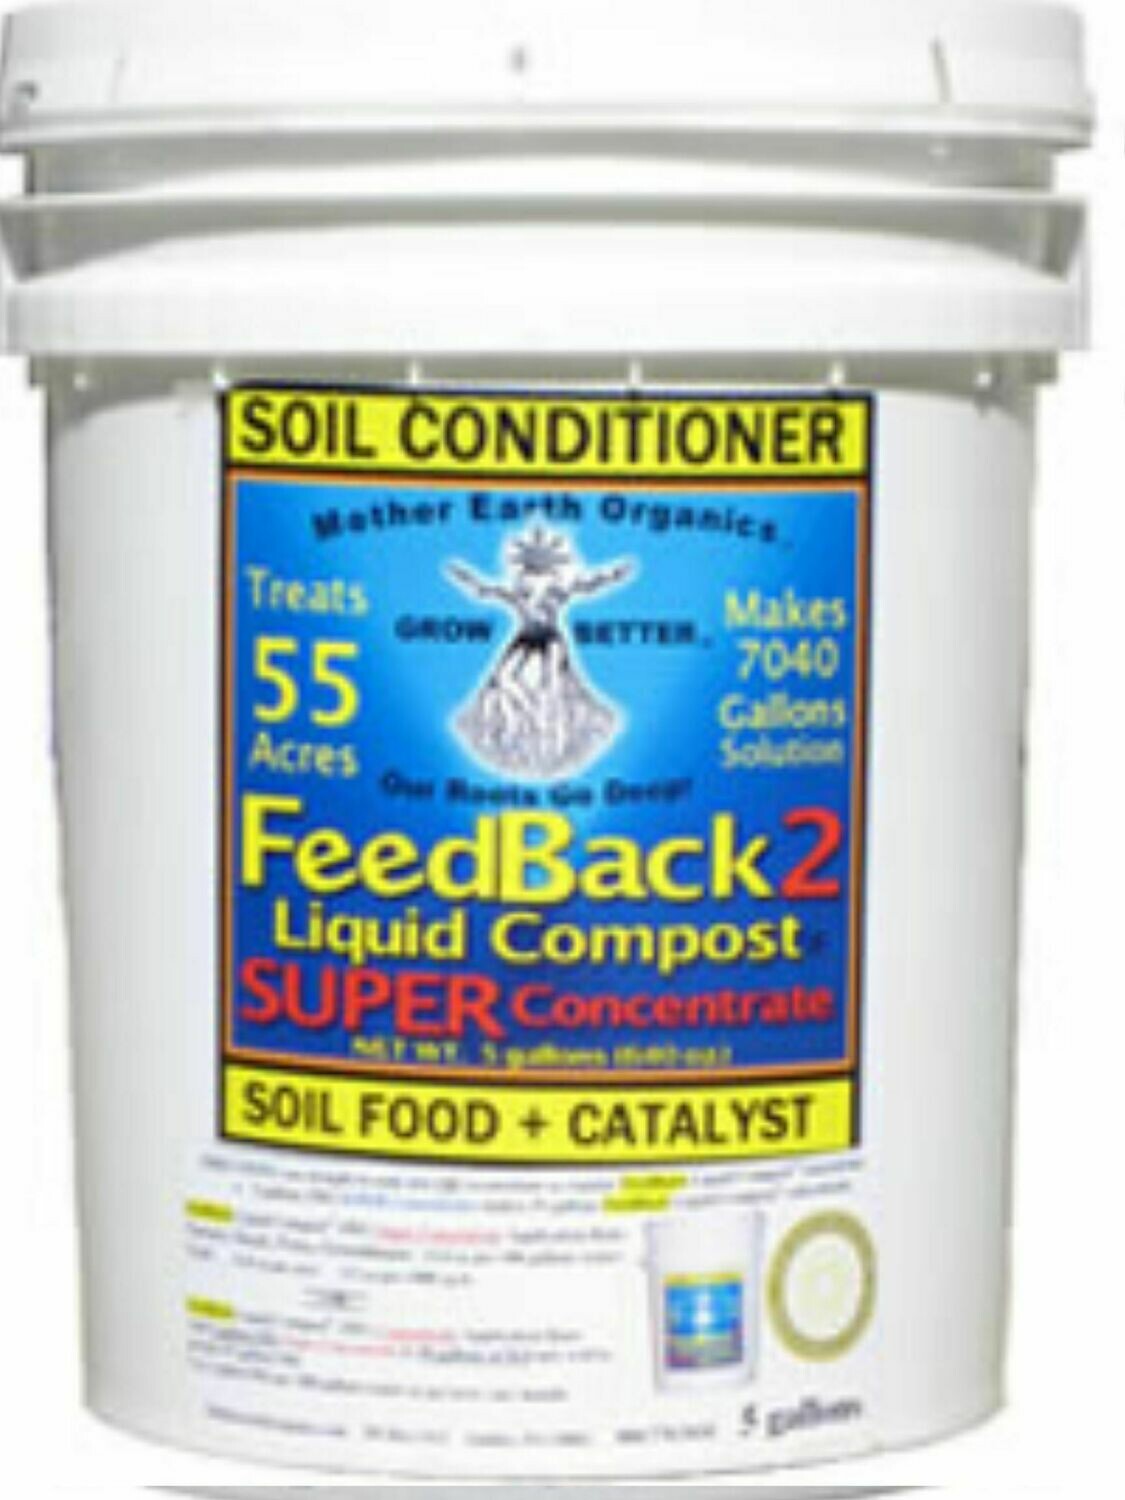 Feedback Liquid Compost Super Concentrate